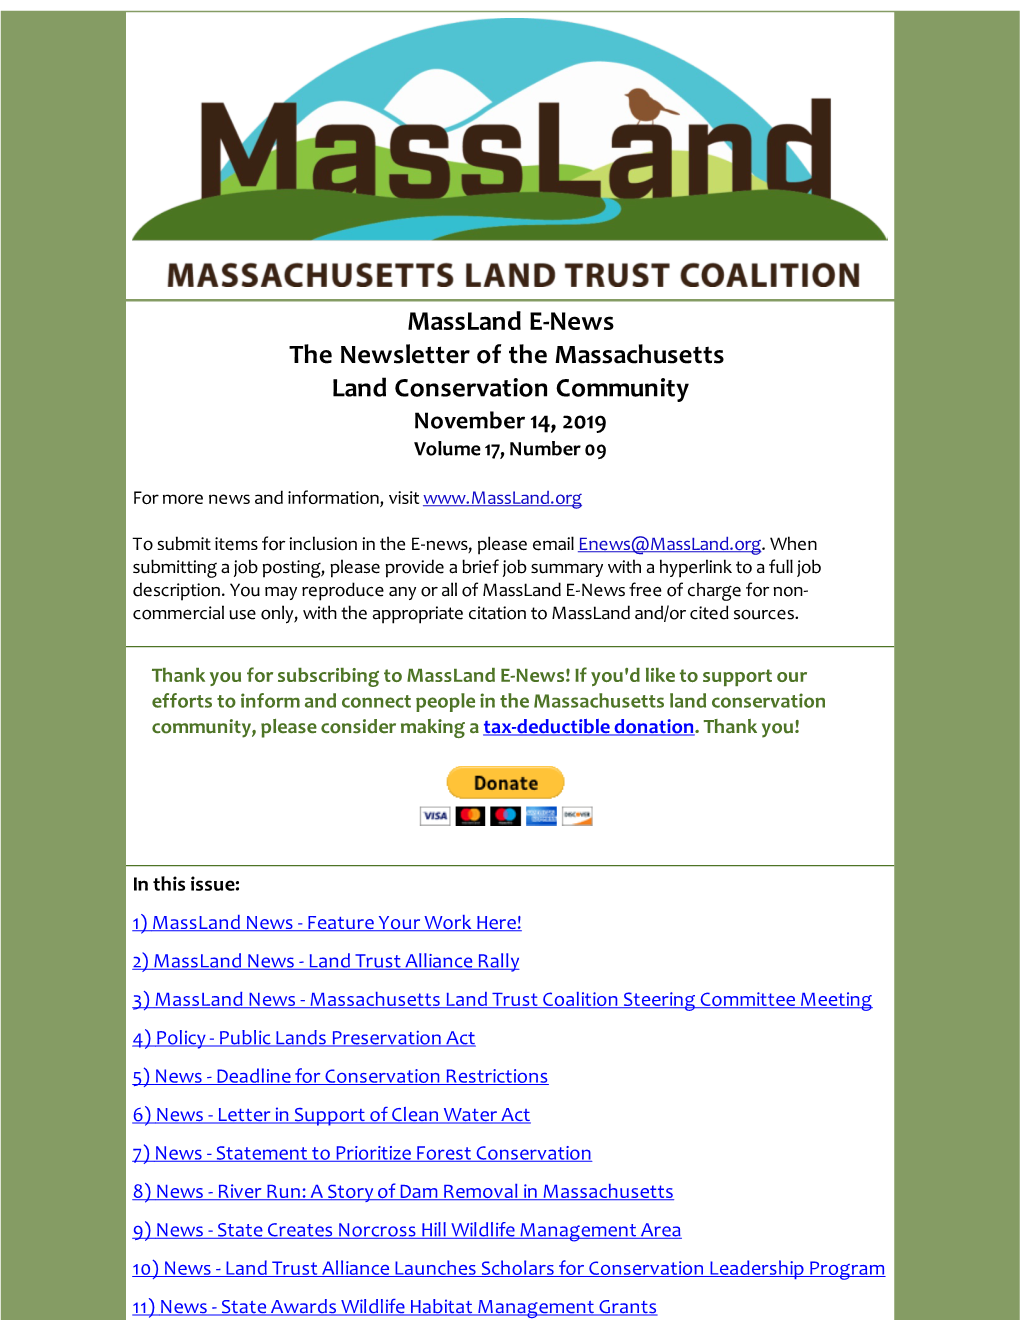 Massland E-News the Newsletter of the Massachusetts Land Conservation Community November 14, 2019 Volume 17, Number 09